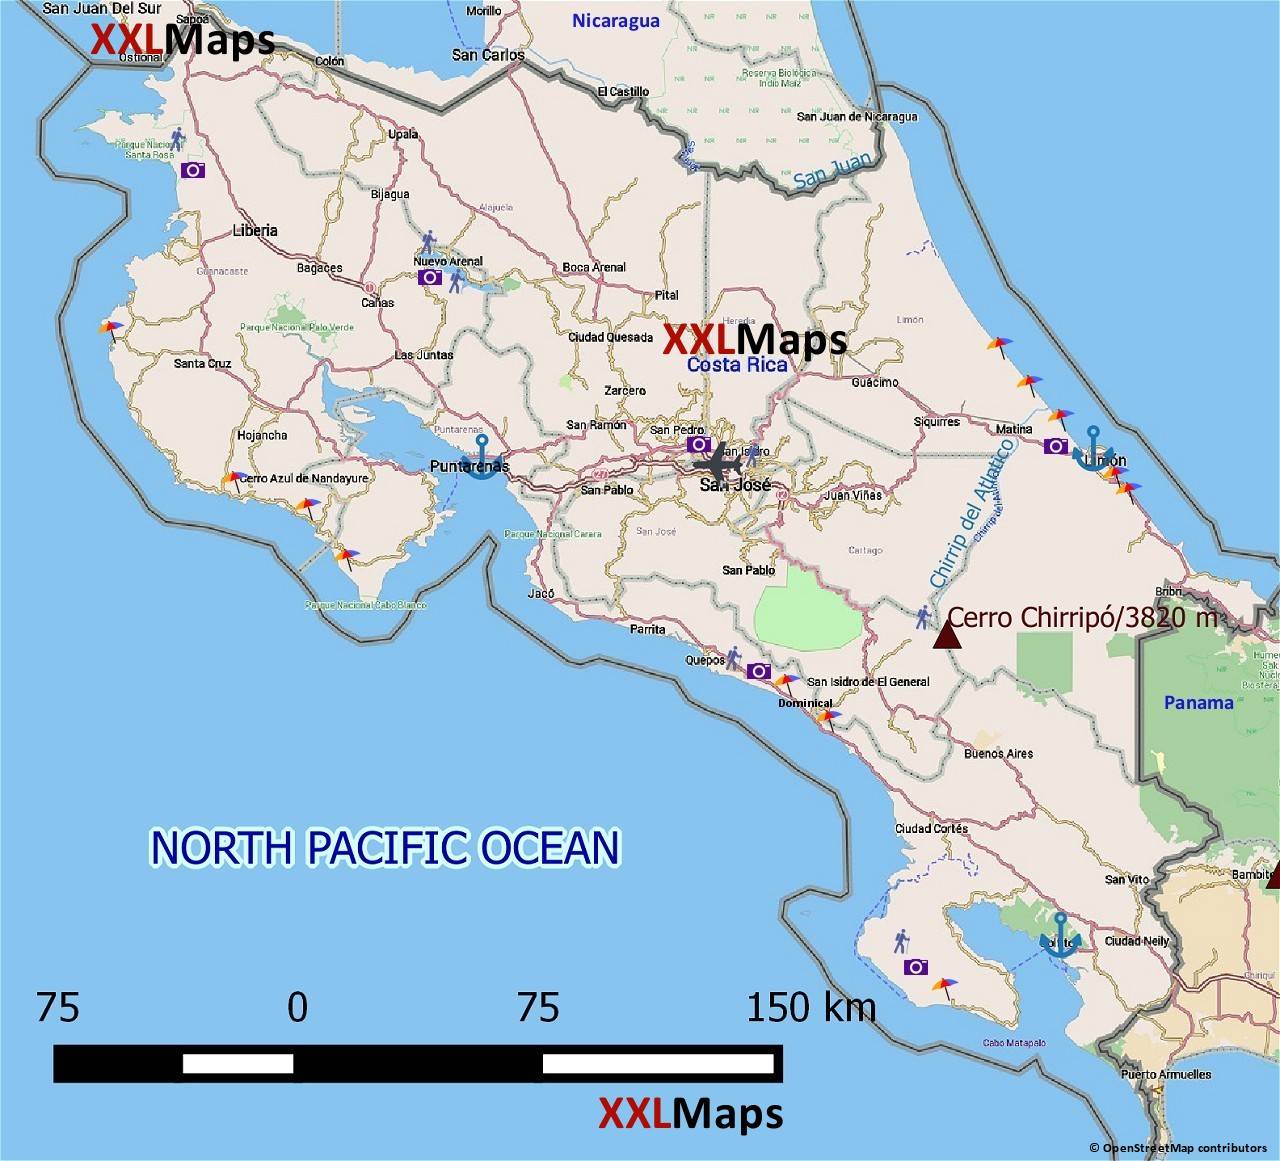 Turist kart over Costa Rica